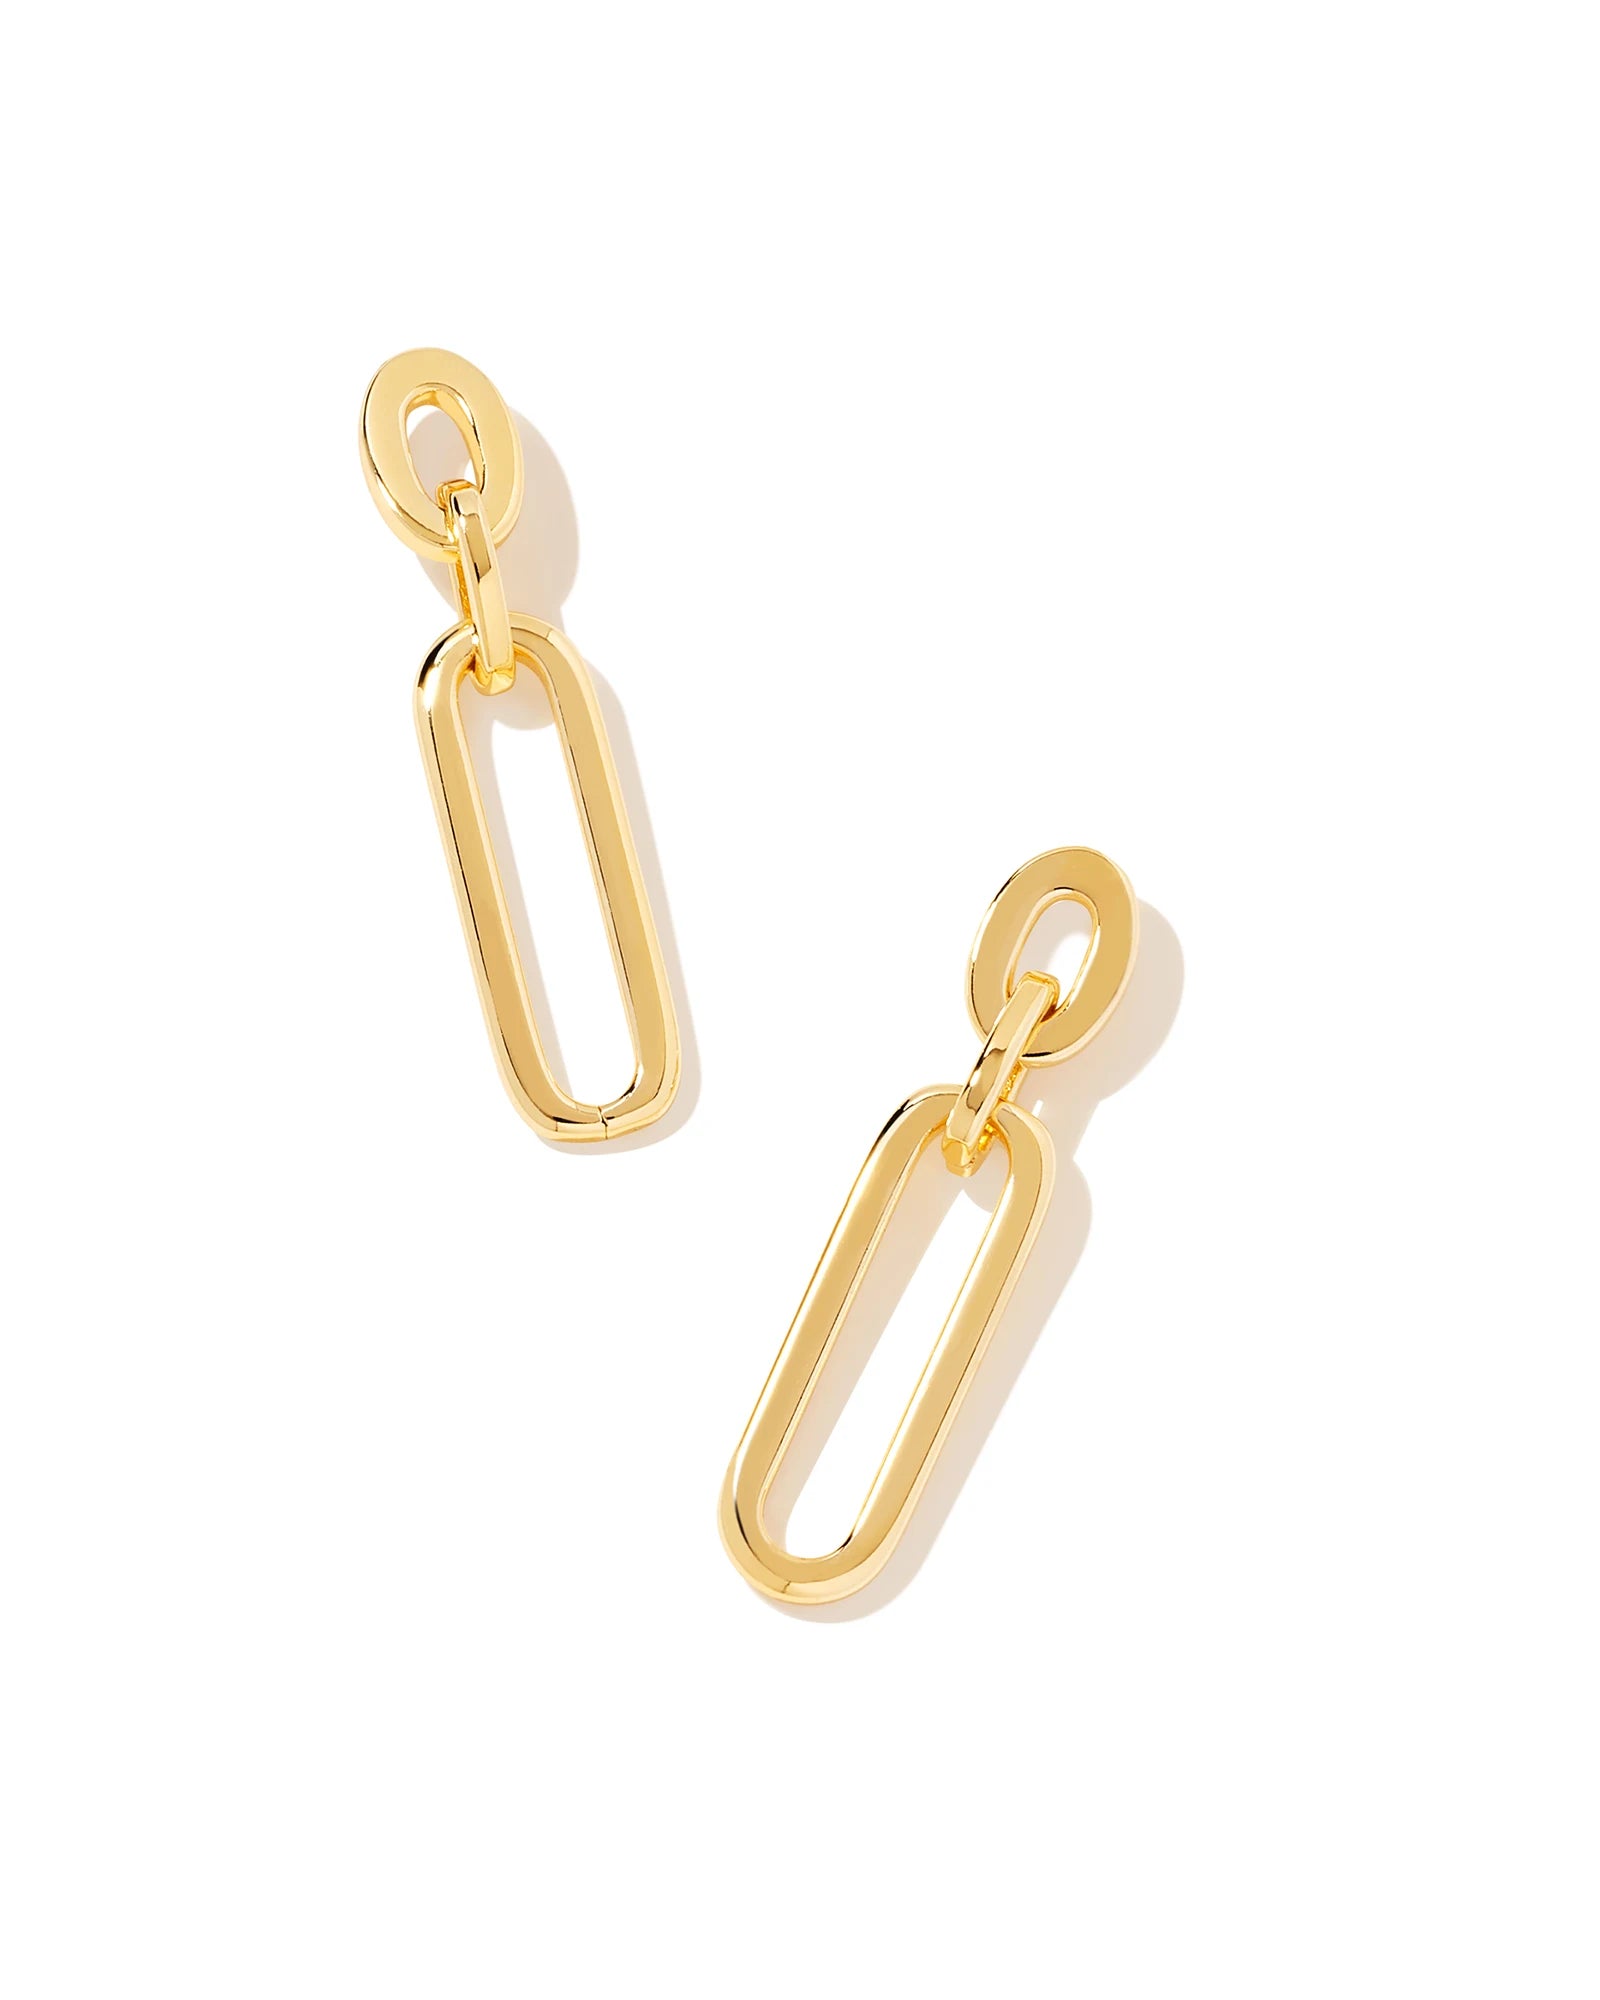 KENDRA SCOTT- Heather Linear Earrings in Gold Metal